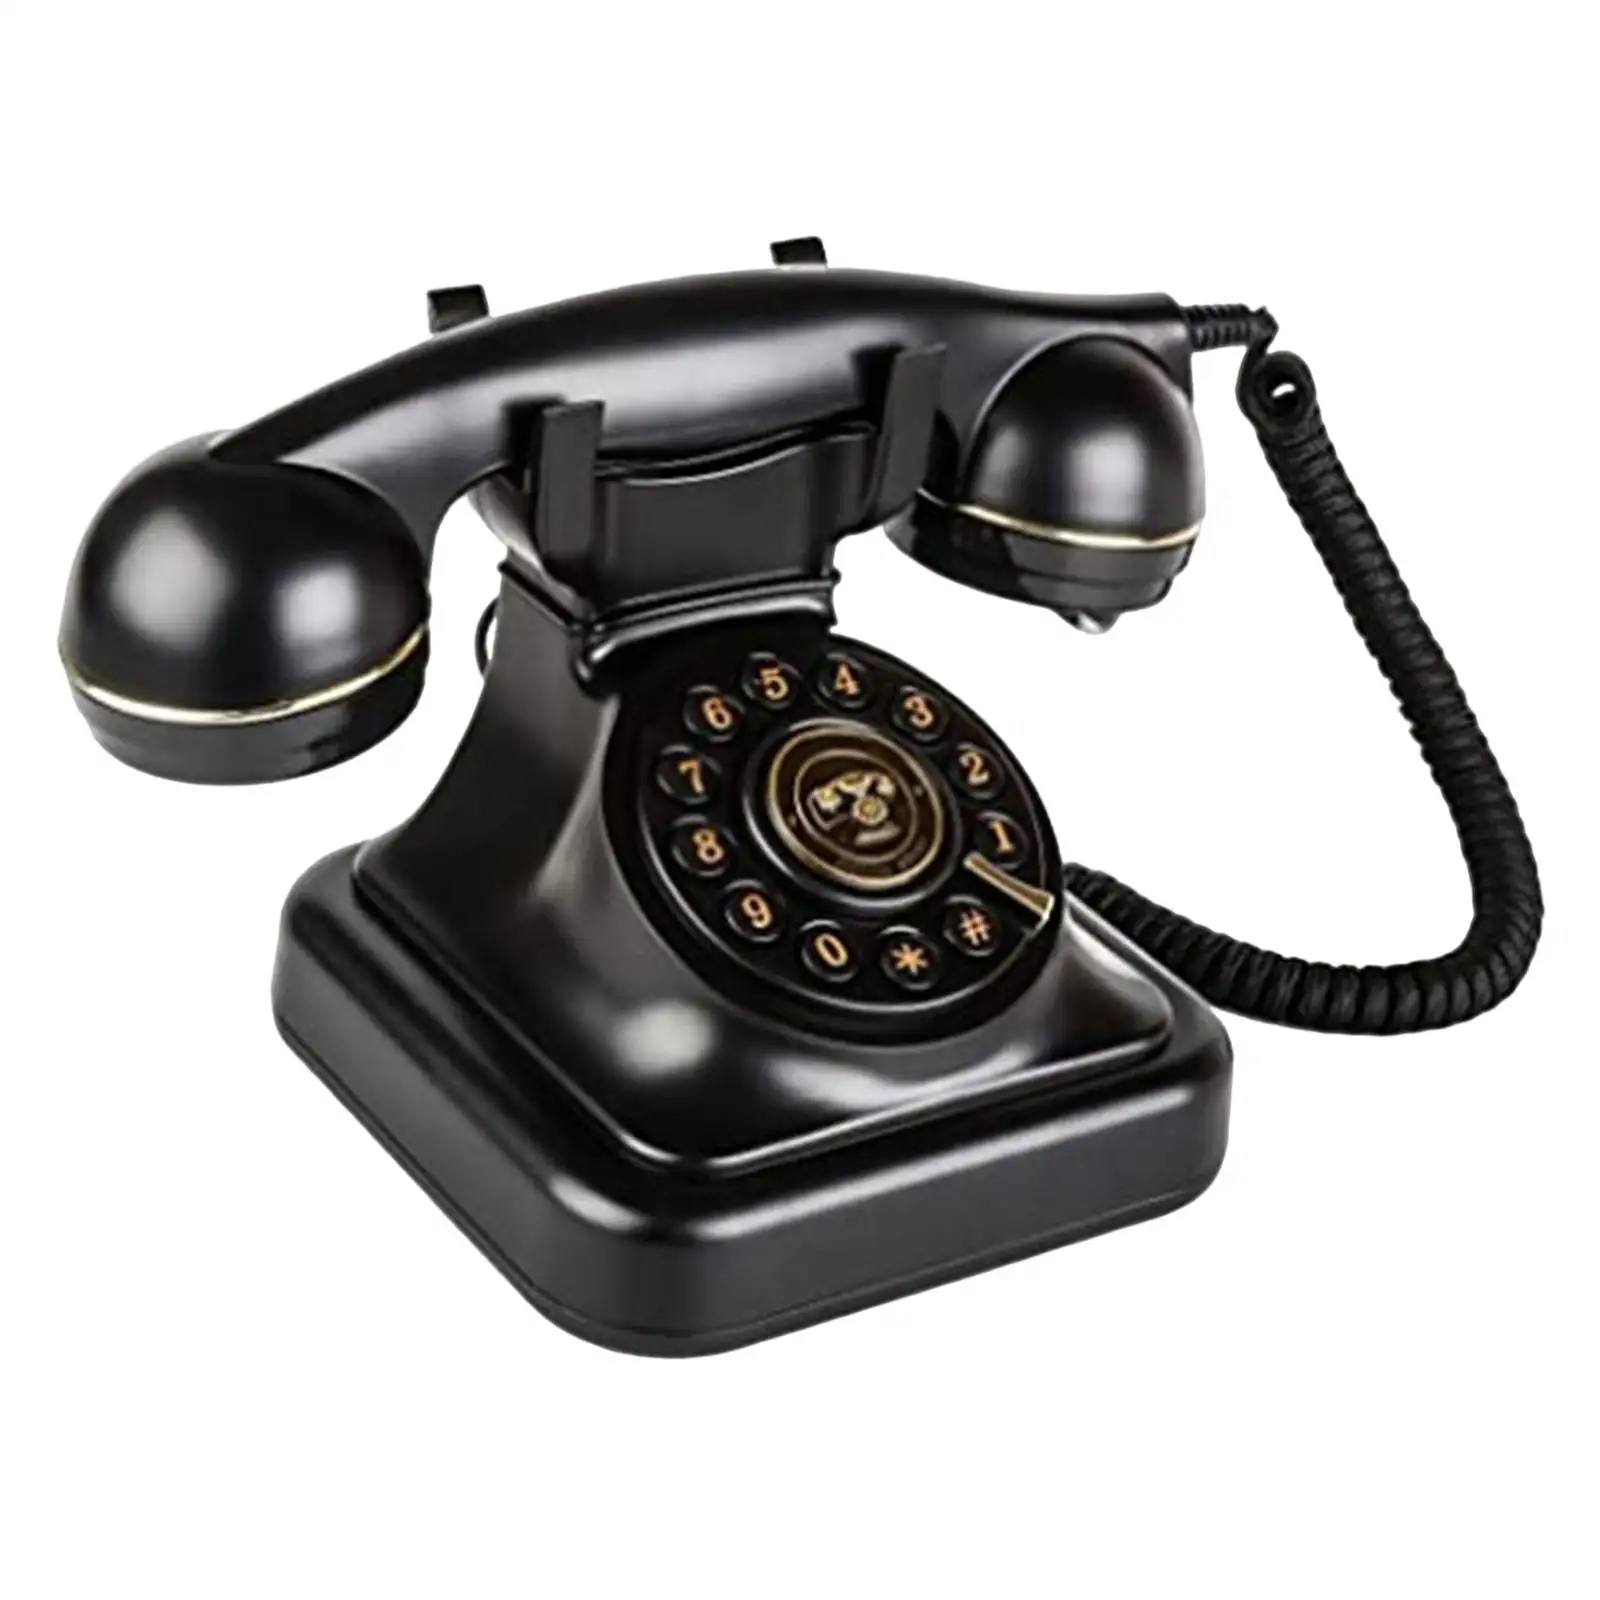 Telefono antico telefono fisso vecchio stile quadrante telefono domestico con funzione di regolazione del Volume decorazione della scrivania del telefono per ornamento